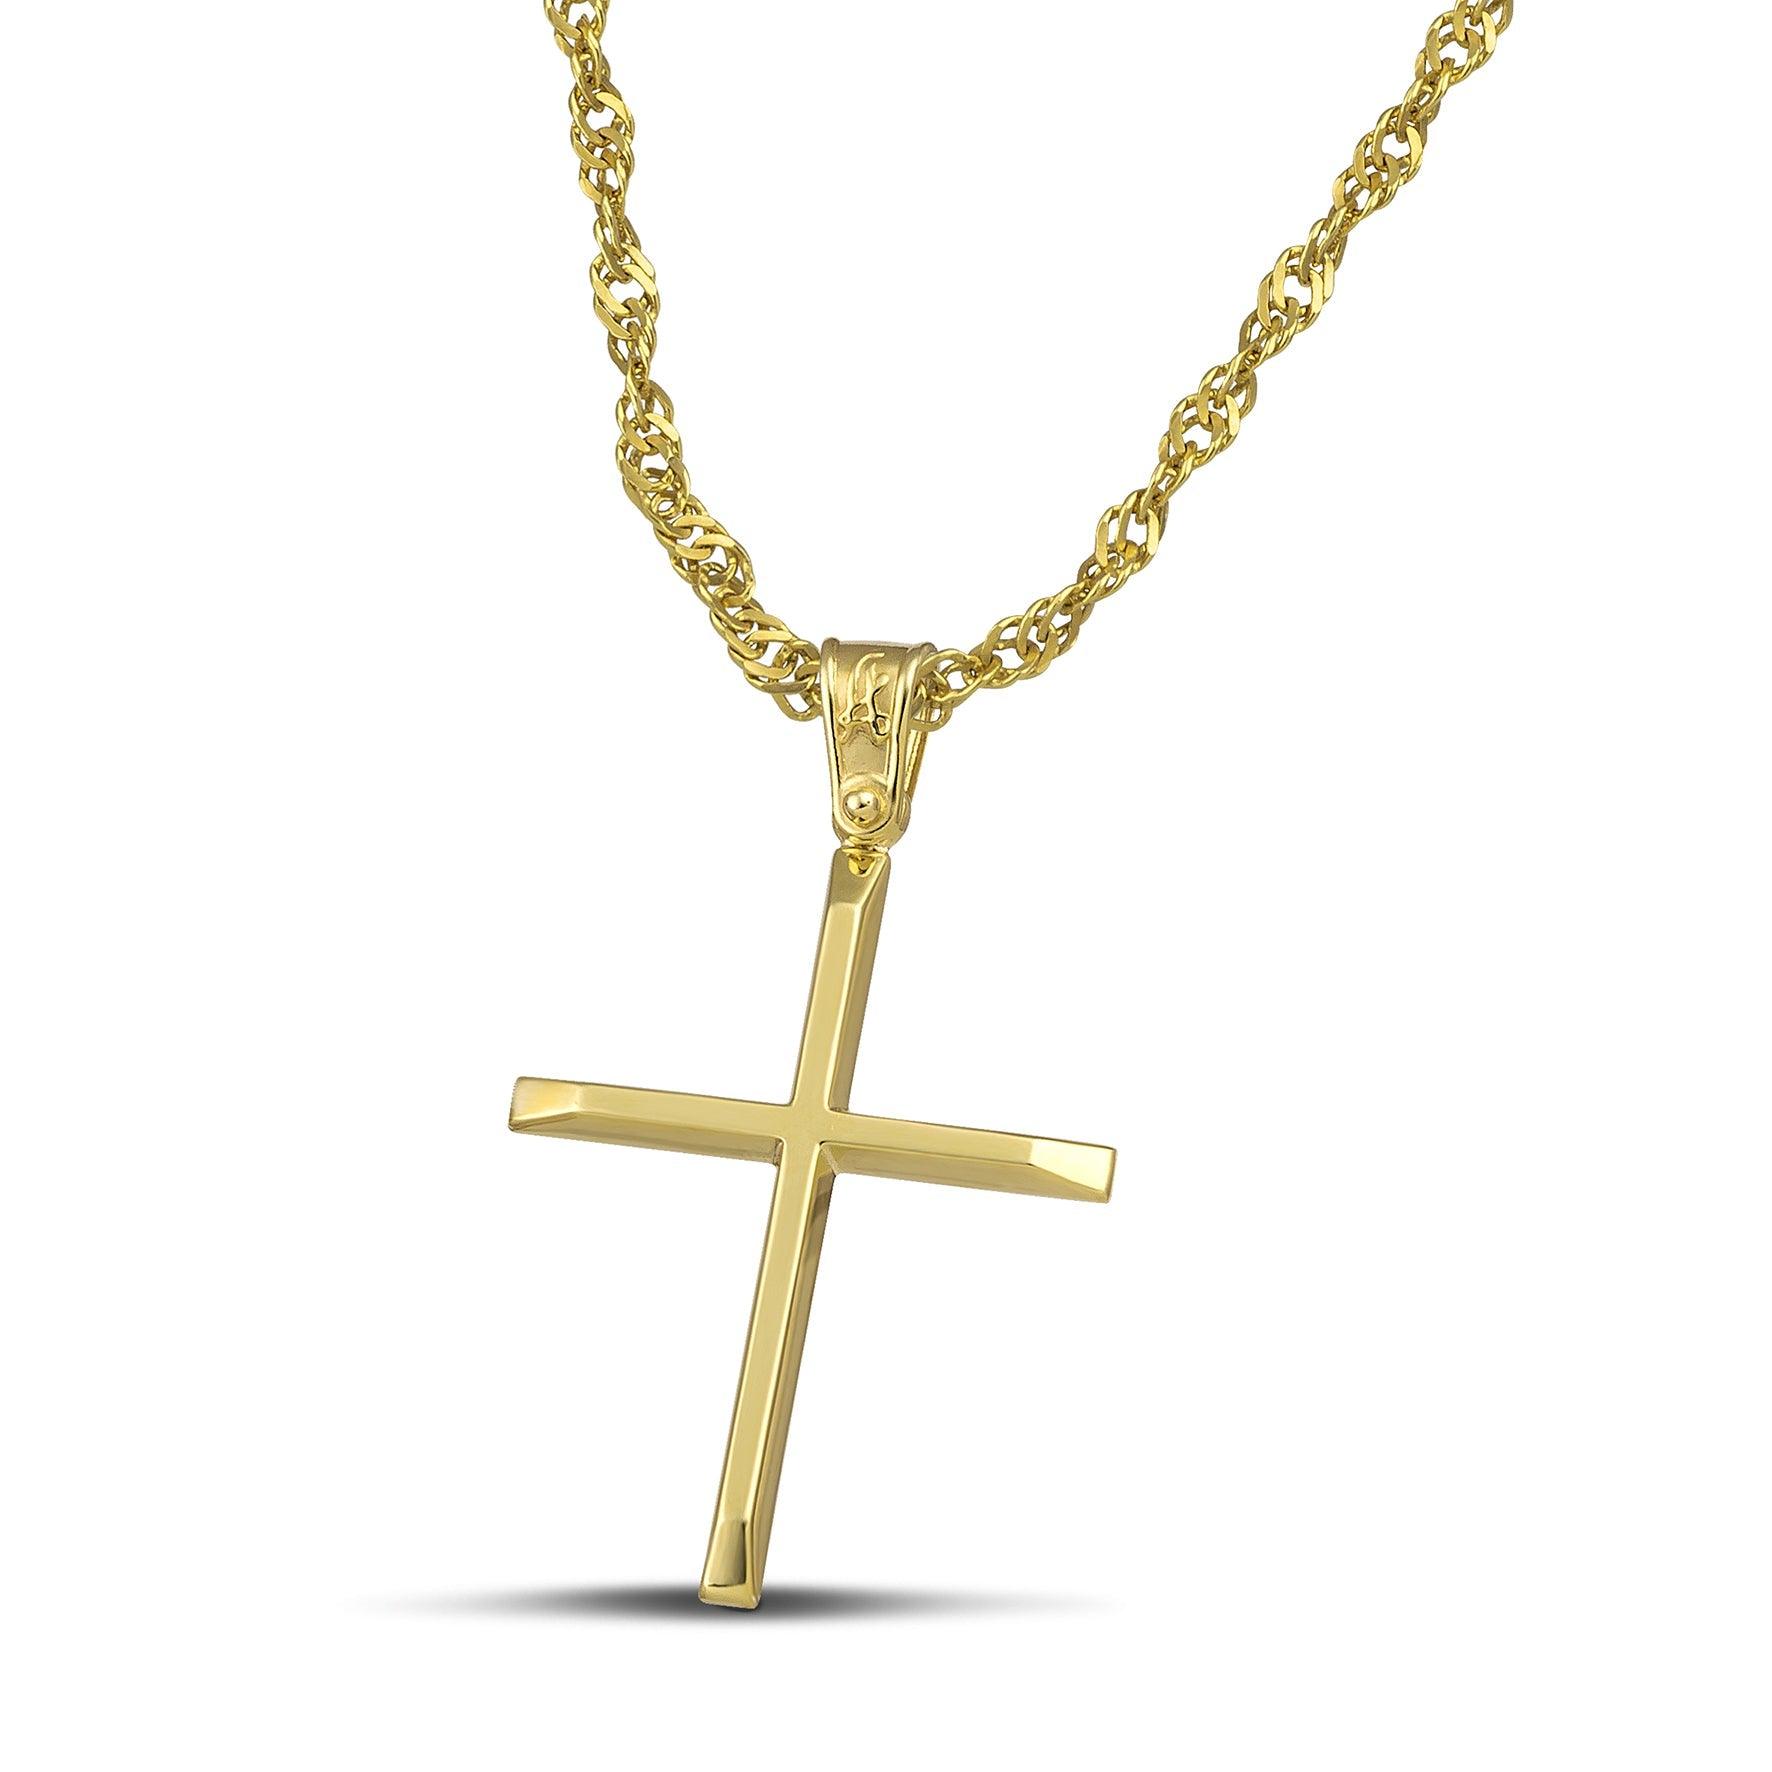 Χρυσός βαφτιστικός σταυρός Κ14 για γυναίκα. Χειροποίητο κόσμημα με ελαφριά κατασκευή, περασμένο σε αλυσίδα.